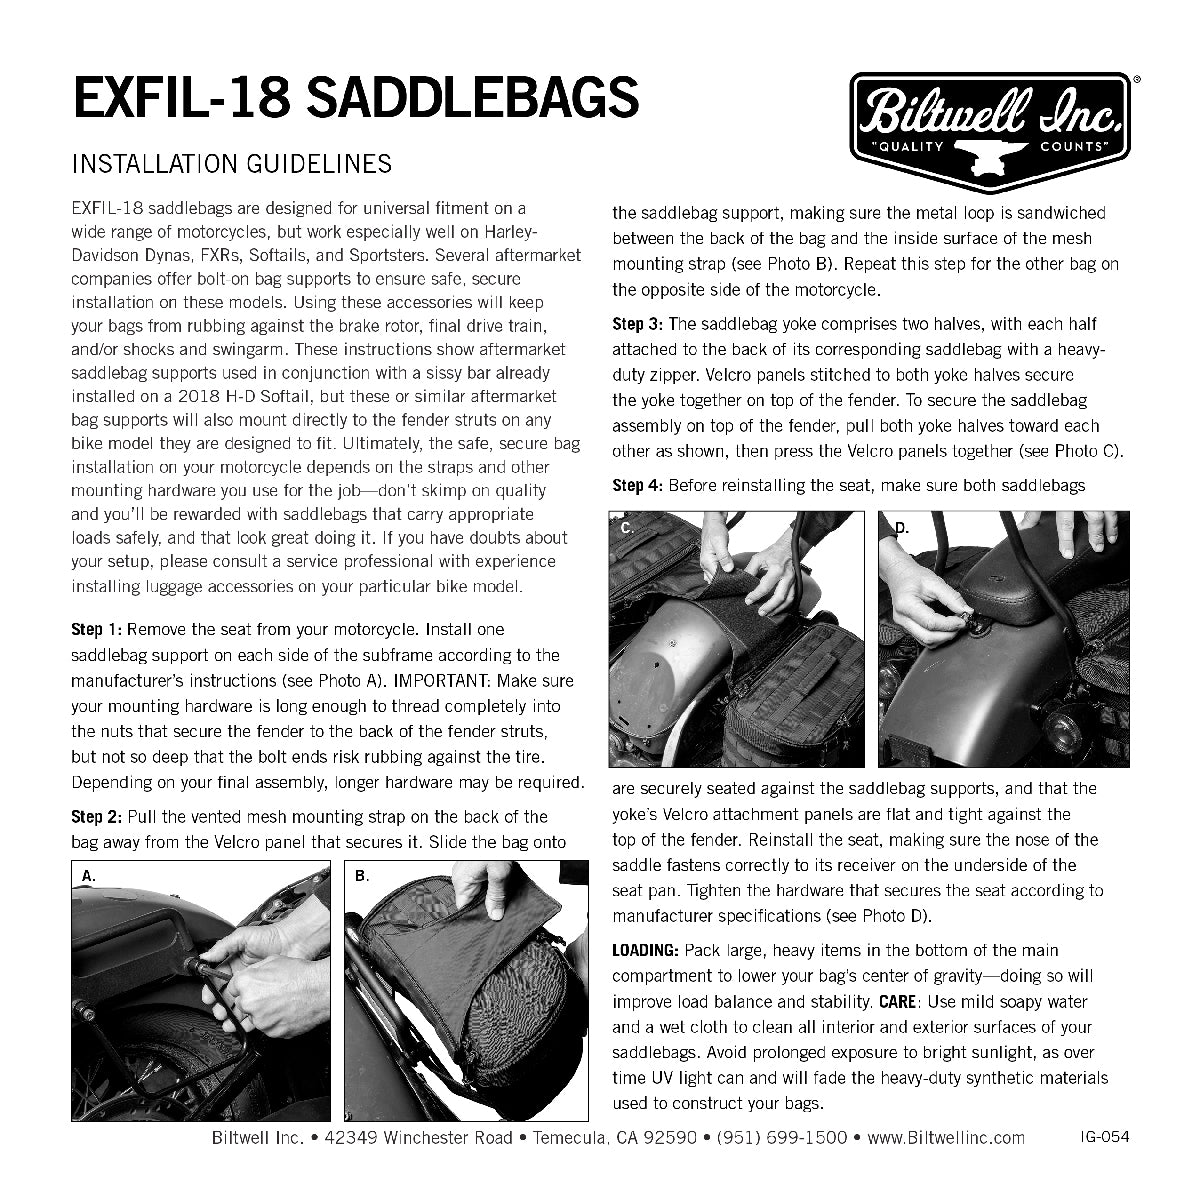 EXFIL-18 Saddlebags Black